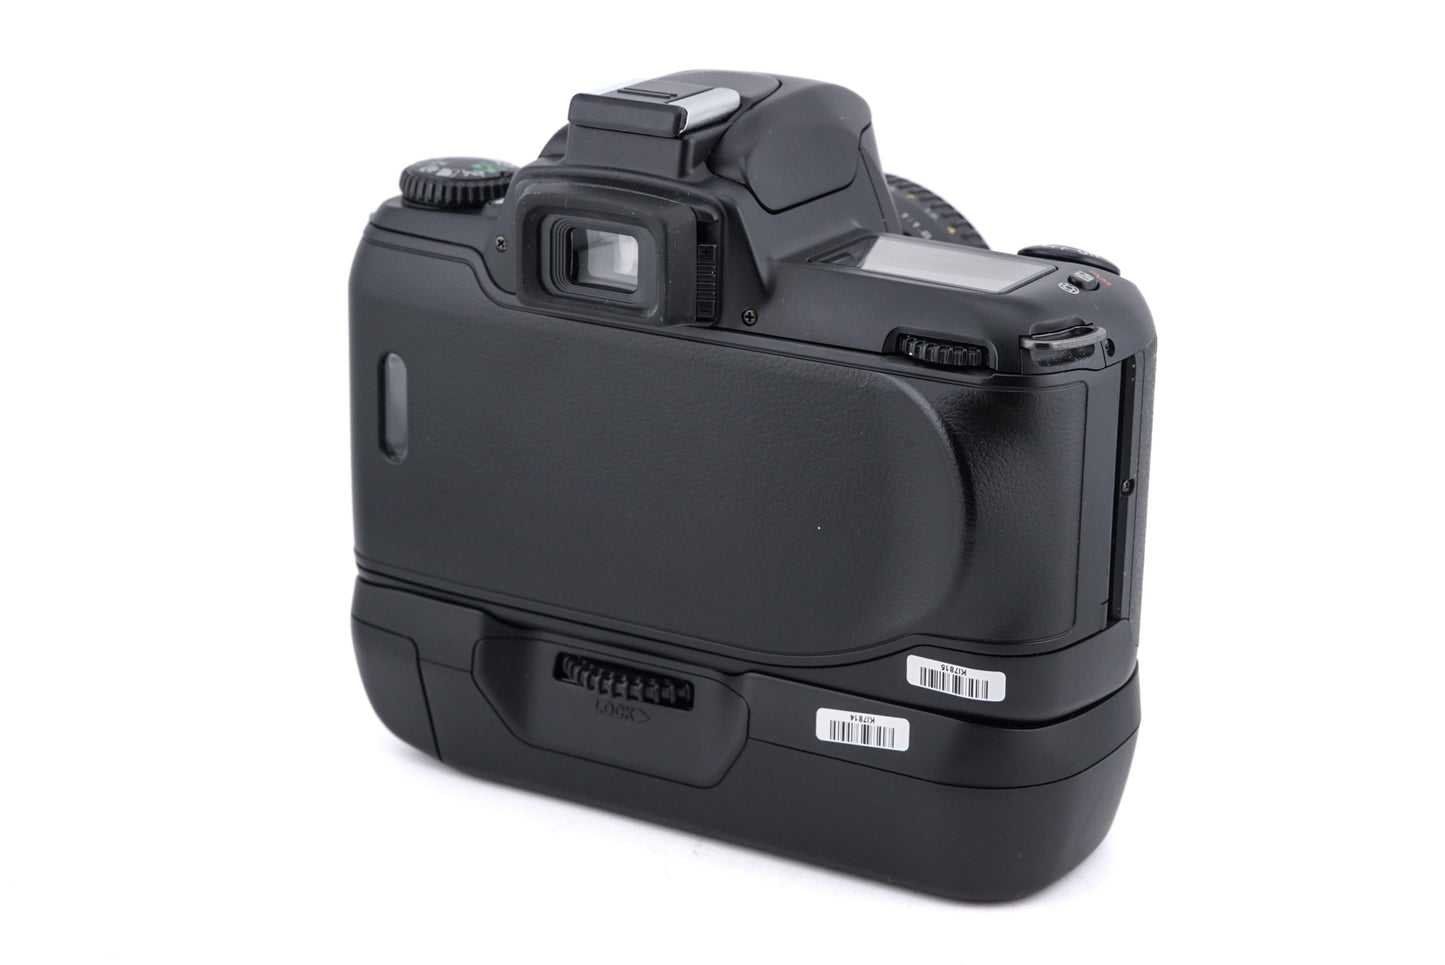 Nikon F65 + MB-17 Battery Pack + 50mm f1.8 AF Nikkor D